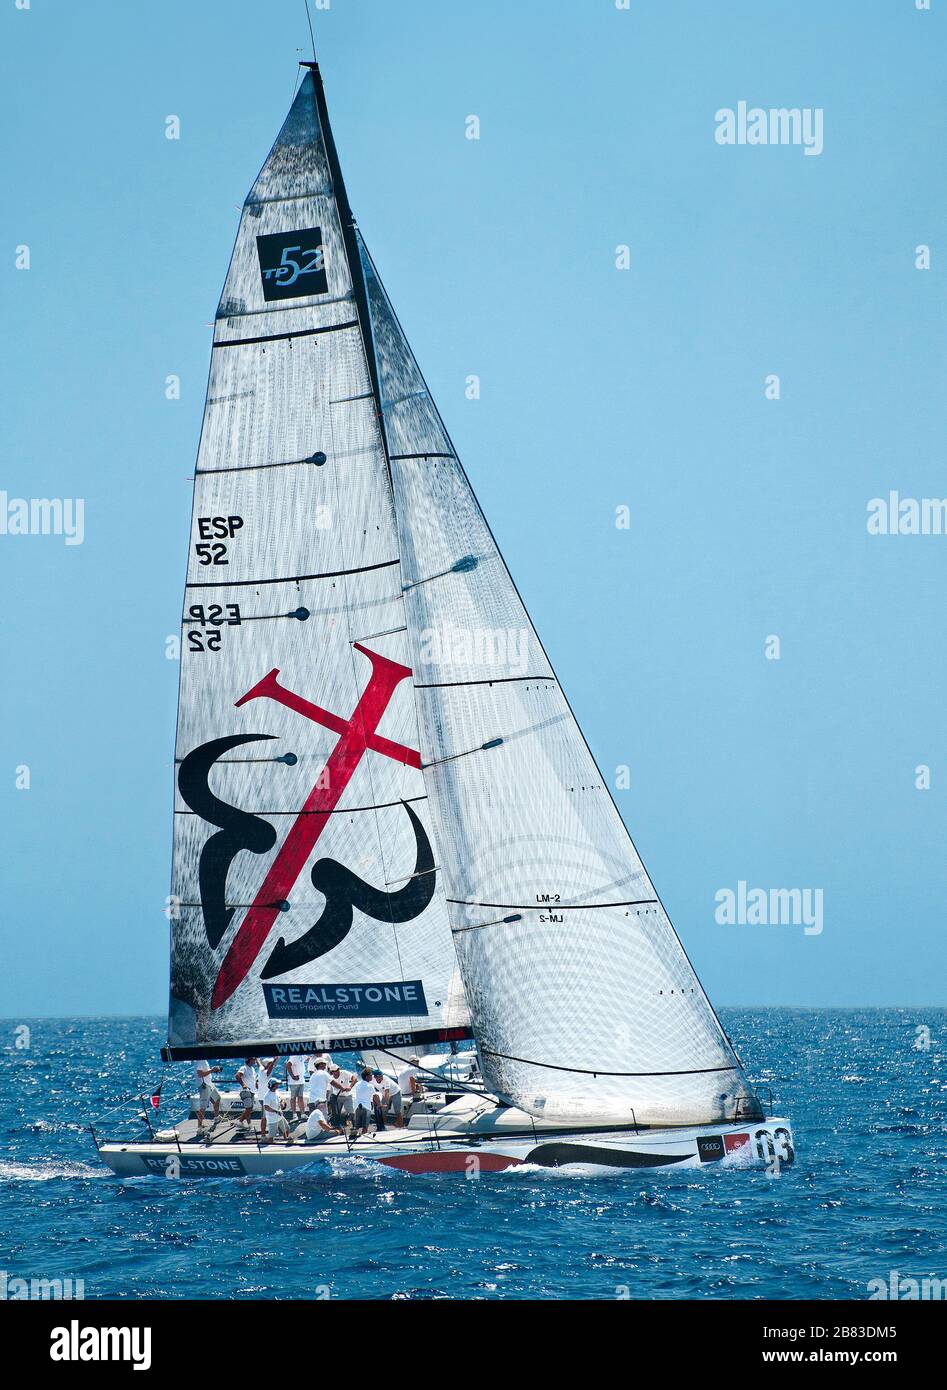 Realstone sponsored yacht, Copa del Rey, Palma de Mallorca, Balearics, Spain Stock Photo